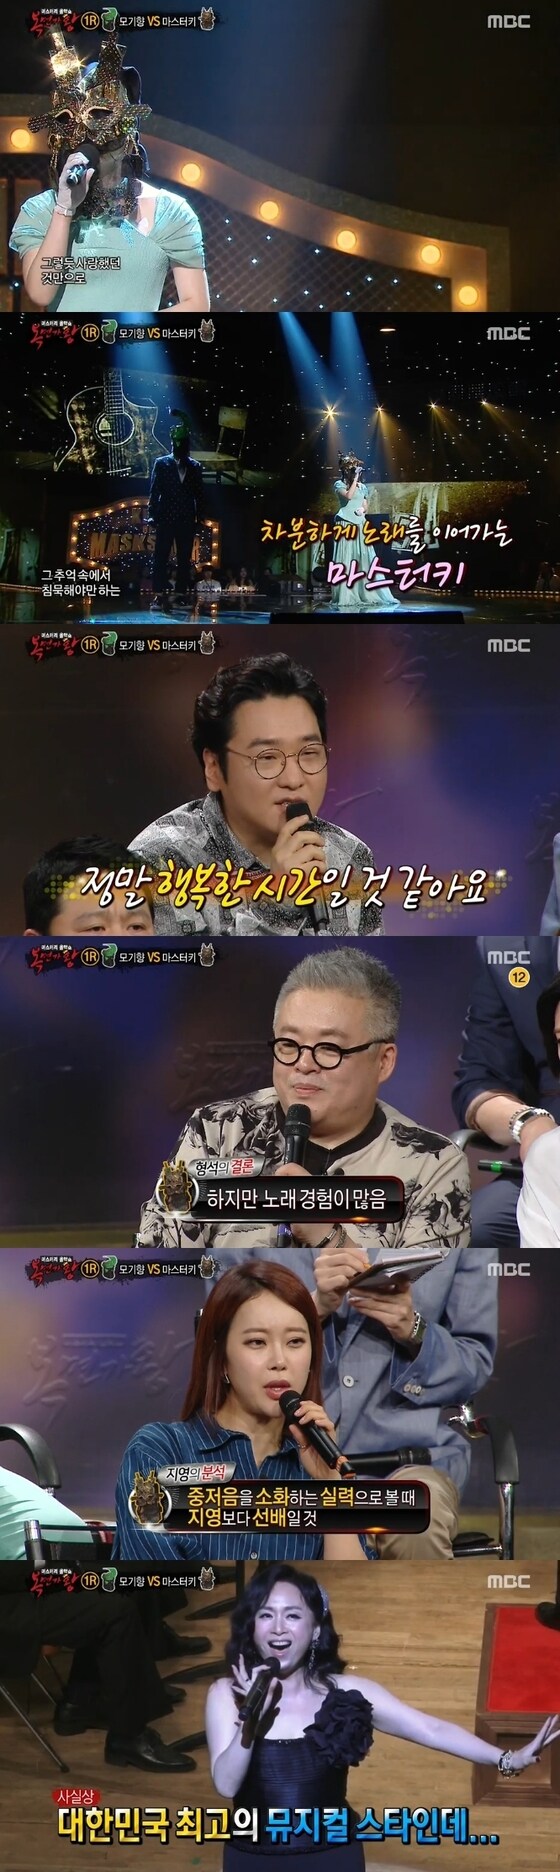 '복면가왕' 1라운드 대결이 펼쳐졌다. © News1스포츠 / MBC '일밤-복면가왕' 캡처